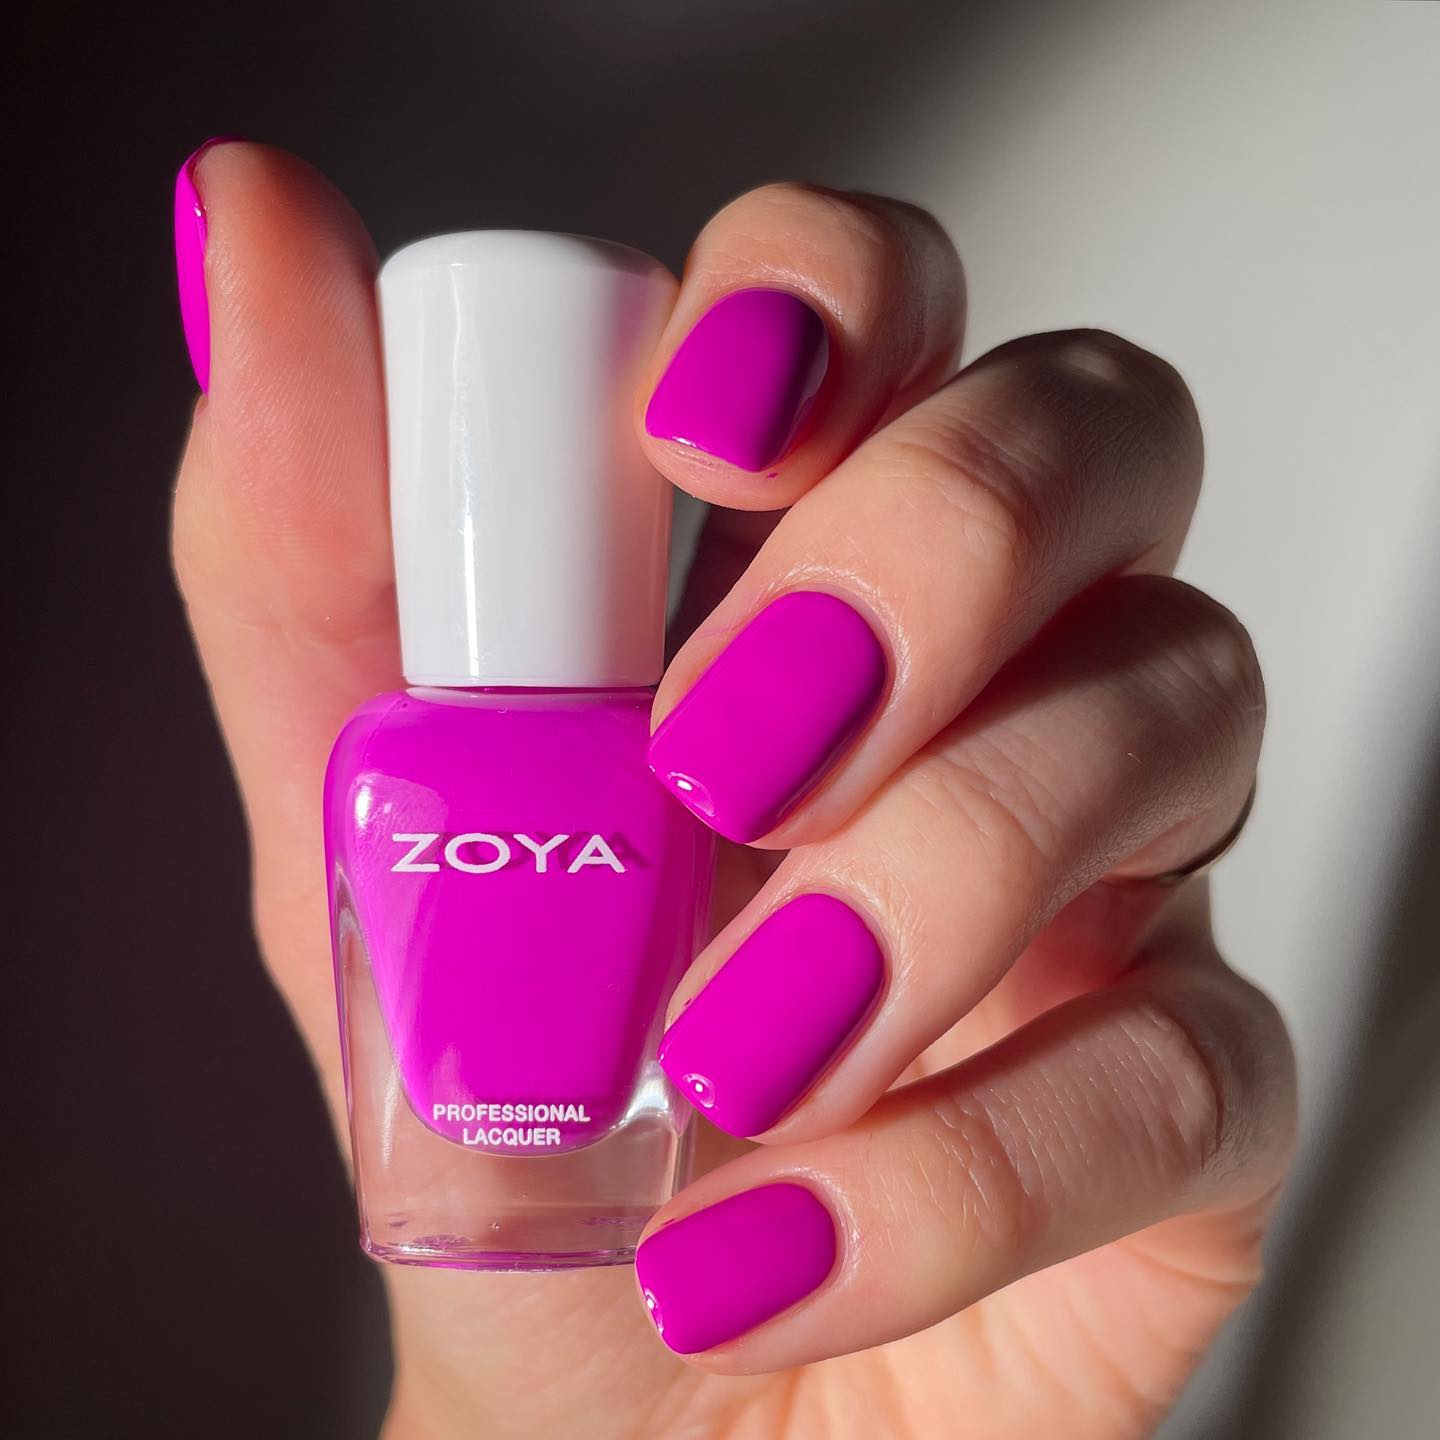 Zoya India | Nails, Zoya, Hair and nails